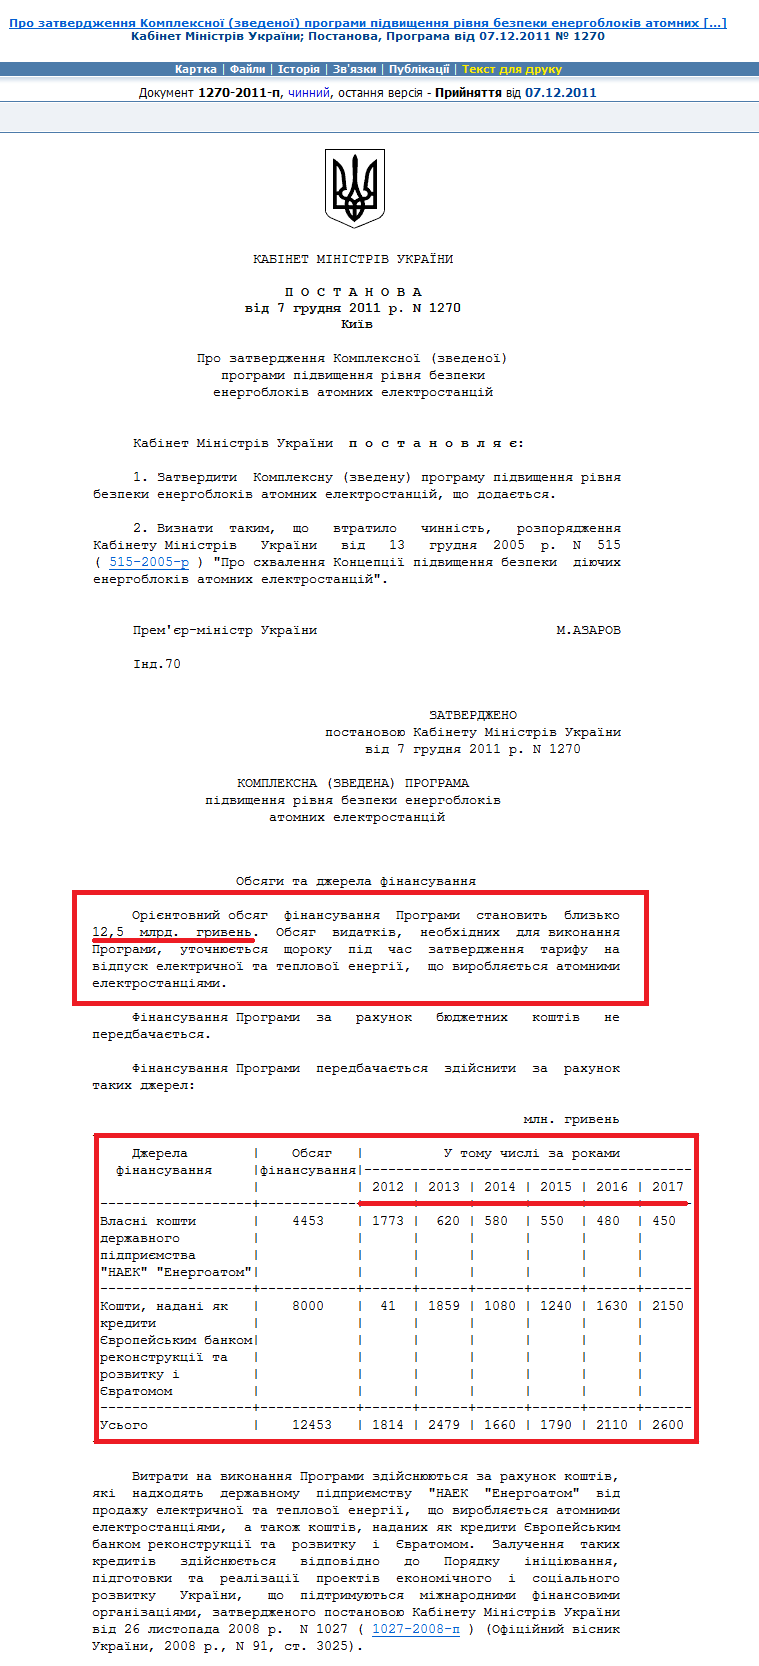 http://zakon1.rada.gov.ua/laws/show/1270-2011-%D0%BF